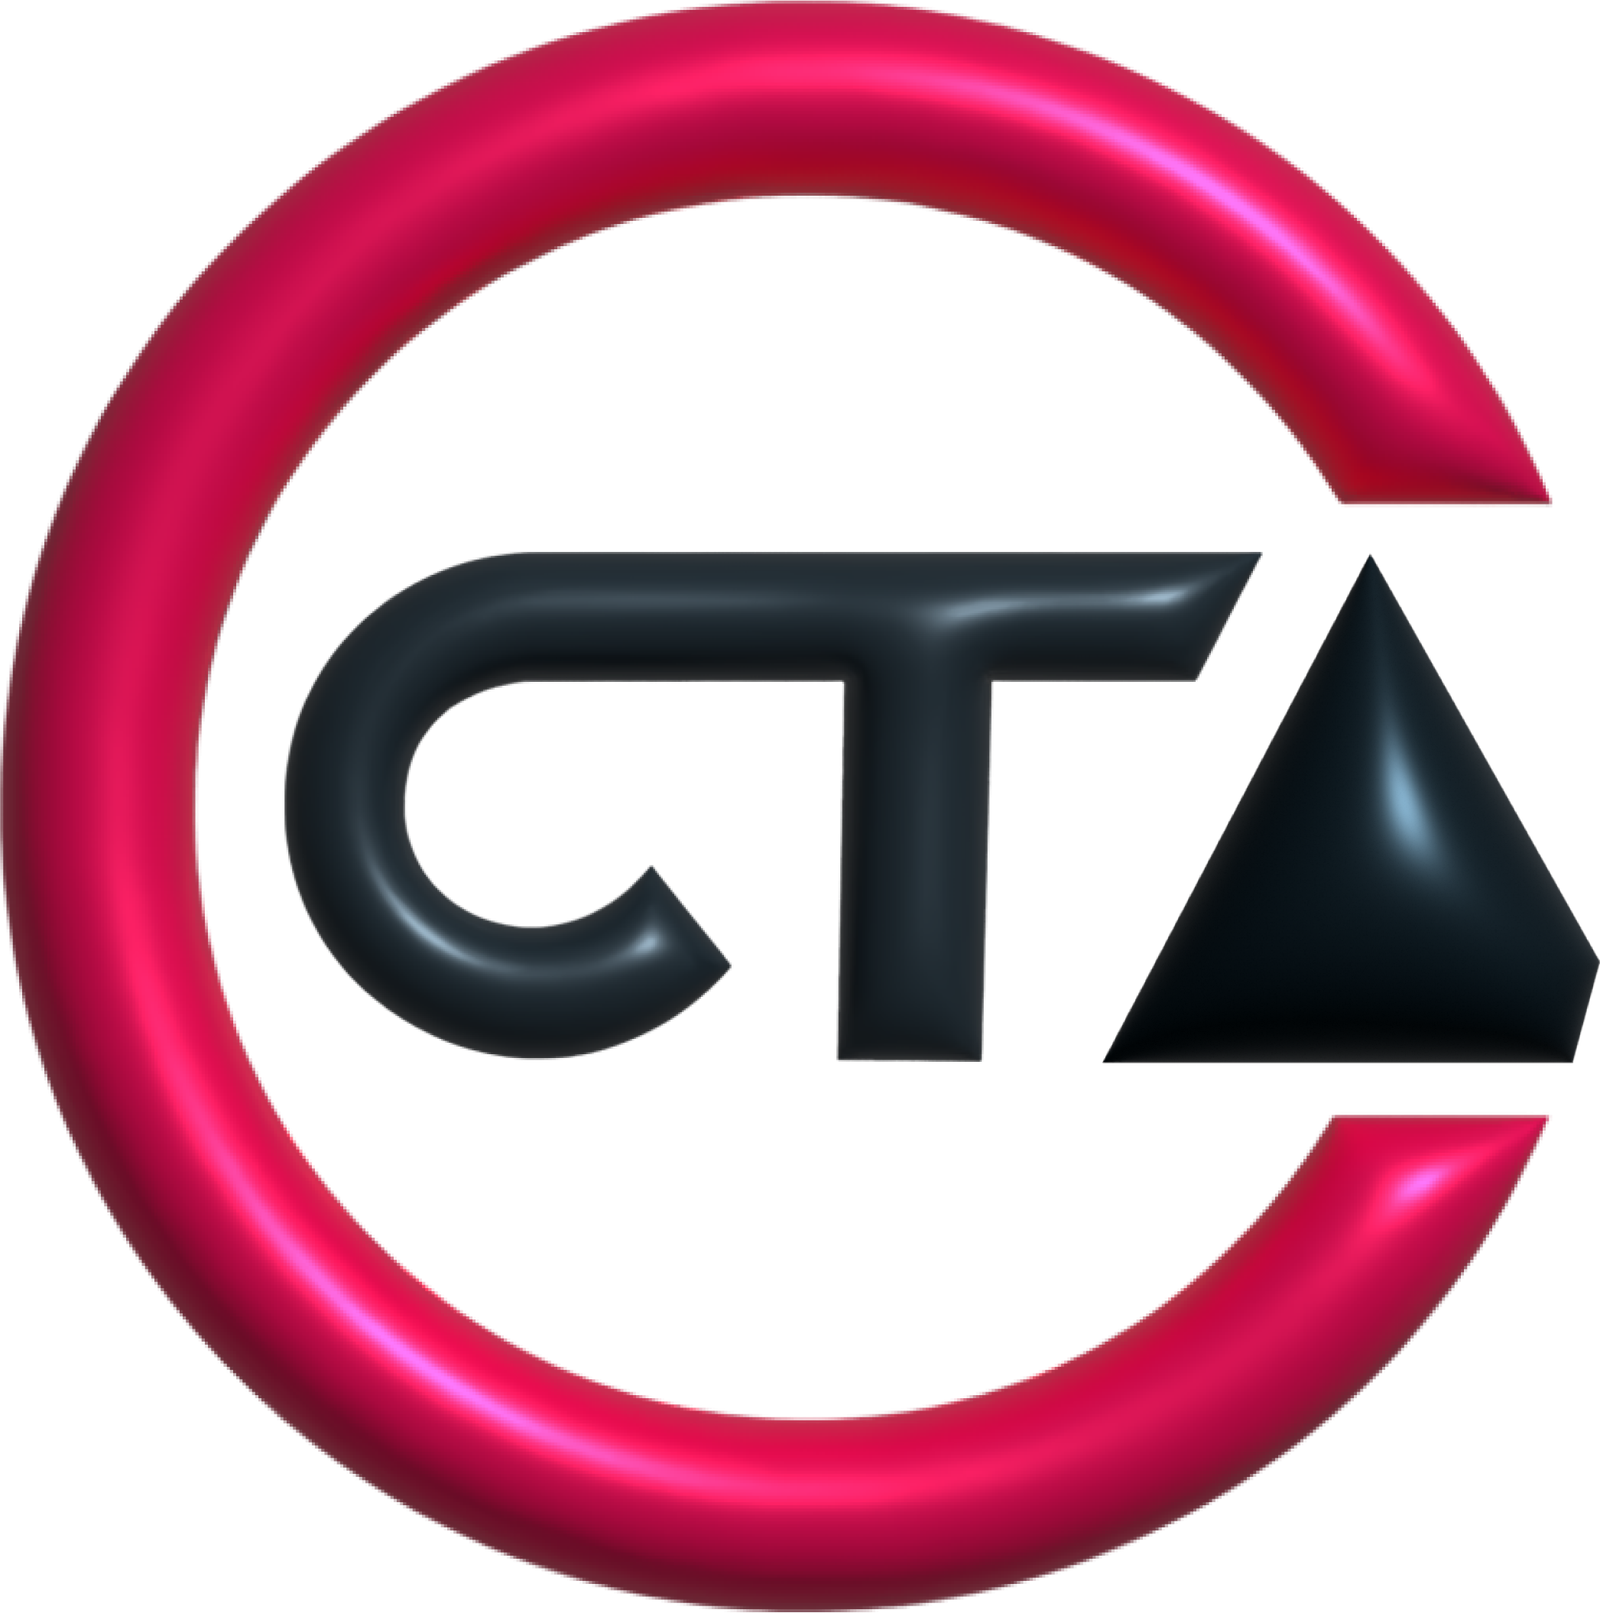 CTA Agency